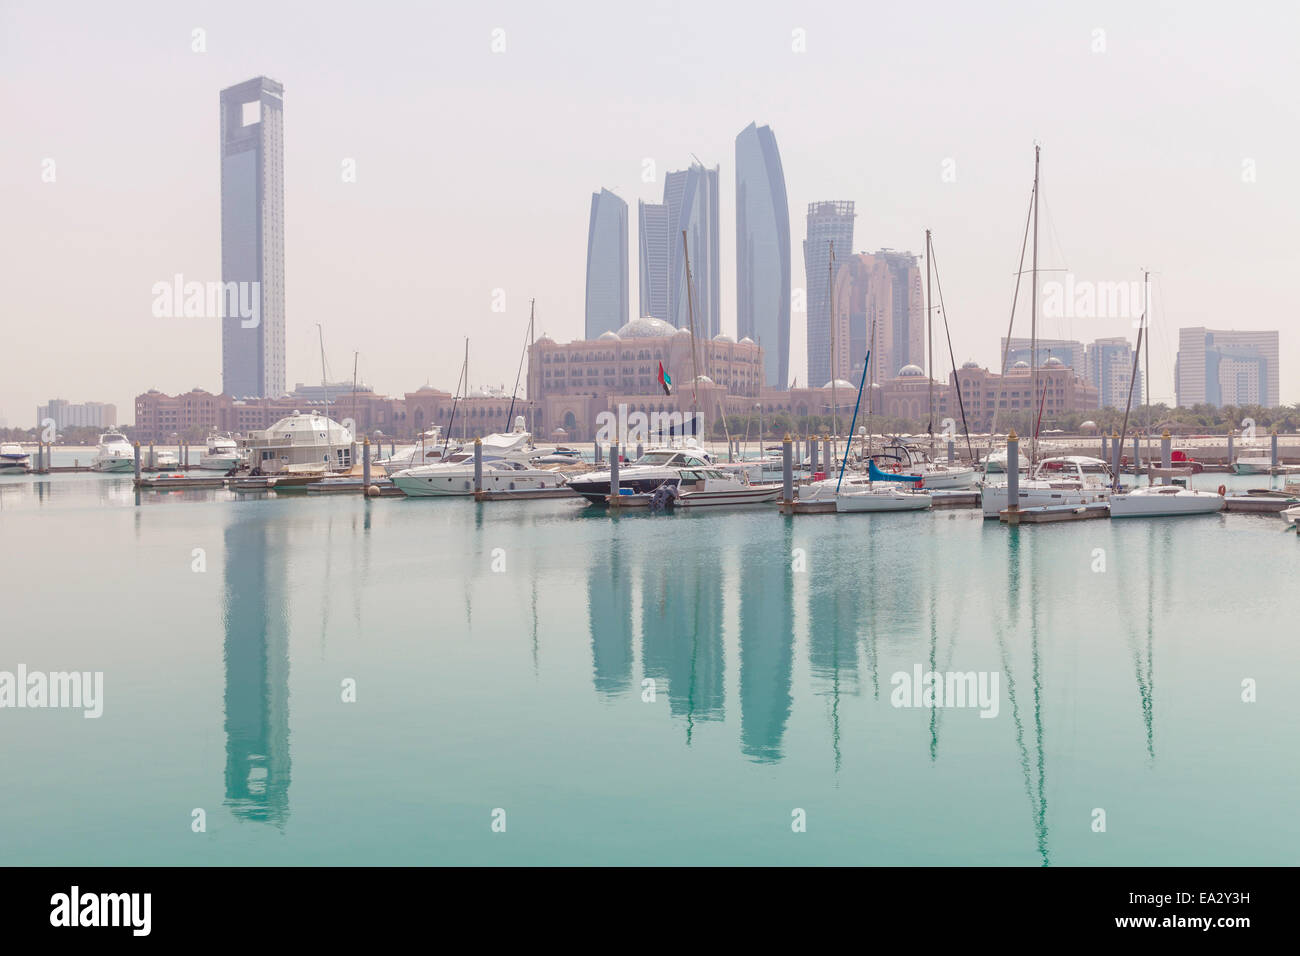 City skyline looking towards the Emirates Palace Hotel and Etihad Towers, Abu Dhabi, United Arab Emirates, Middle East Stock Photo